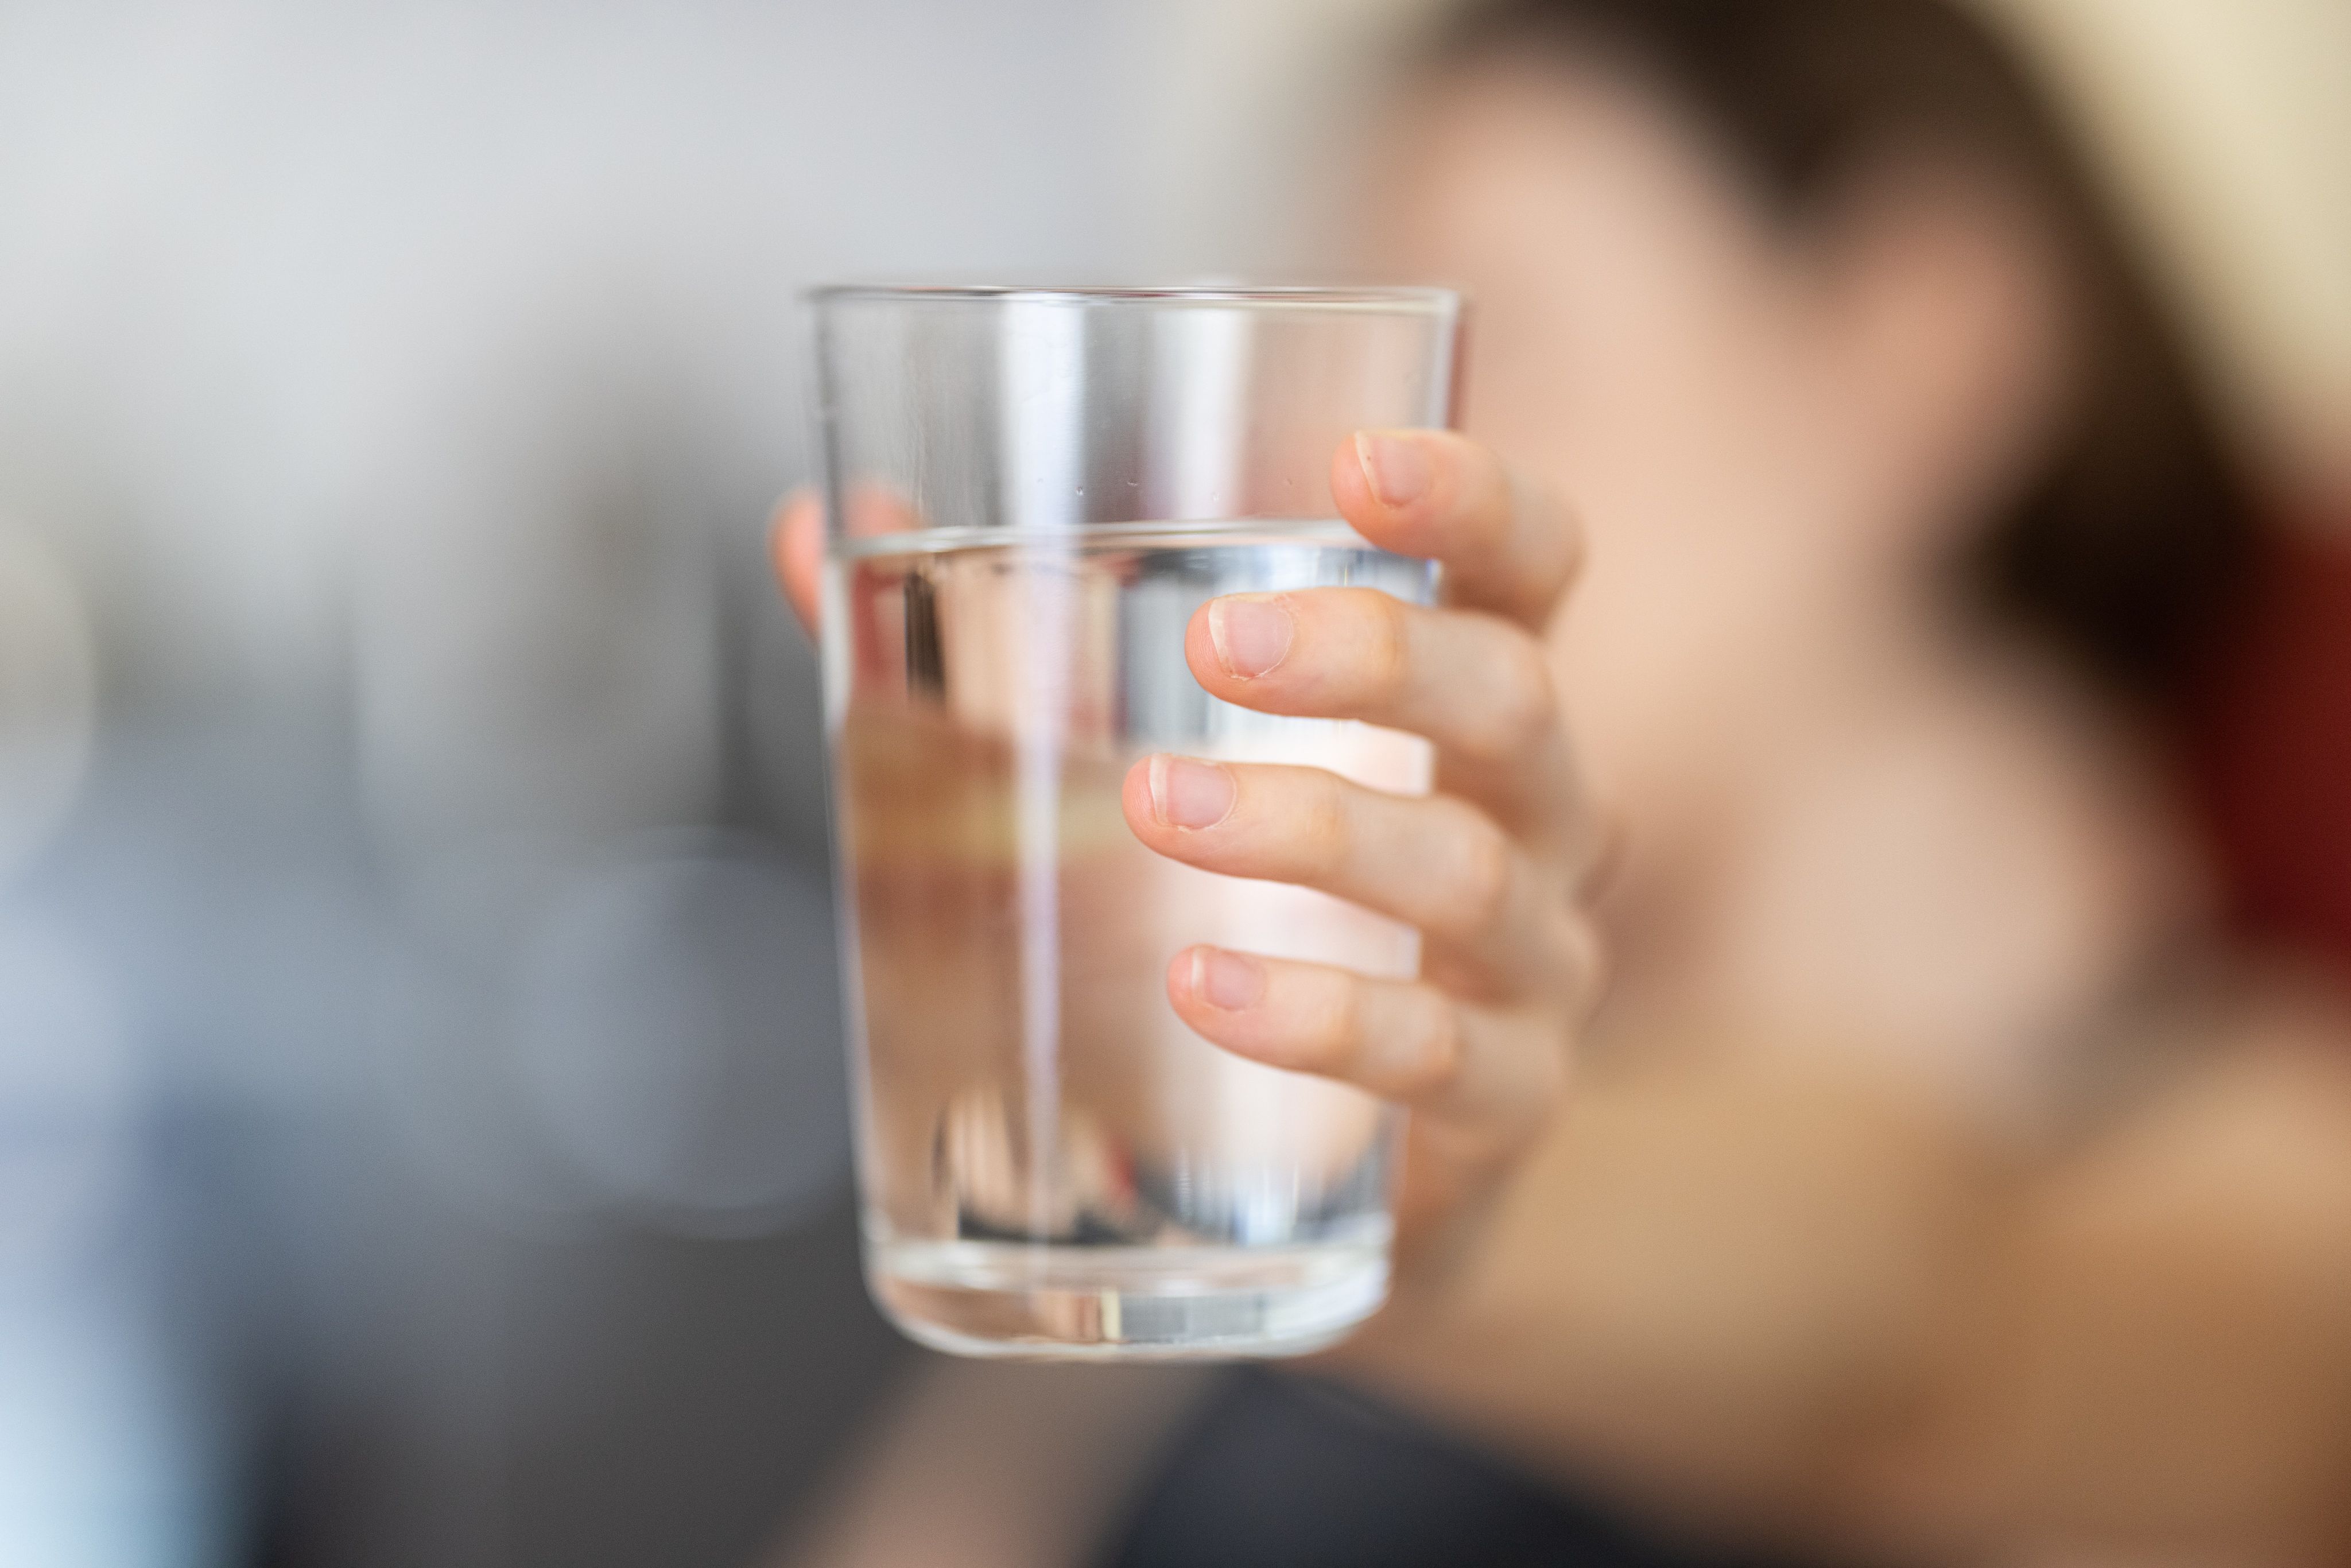 شرب الماء والسوائل يحسن الهضم ويخفف اعراض التهاب المعدة